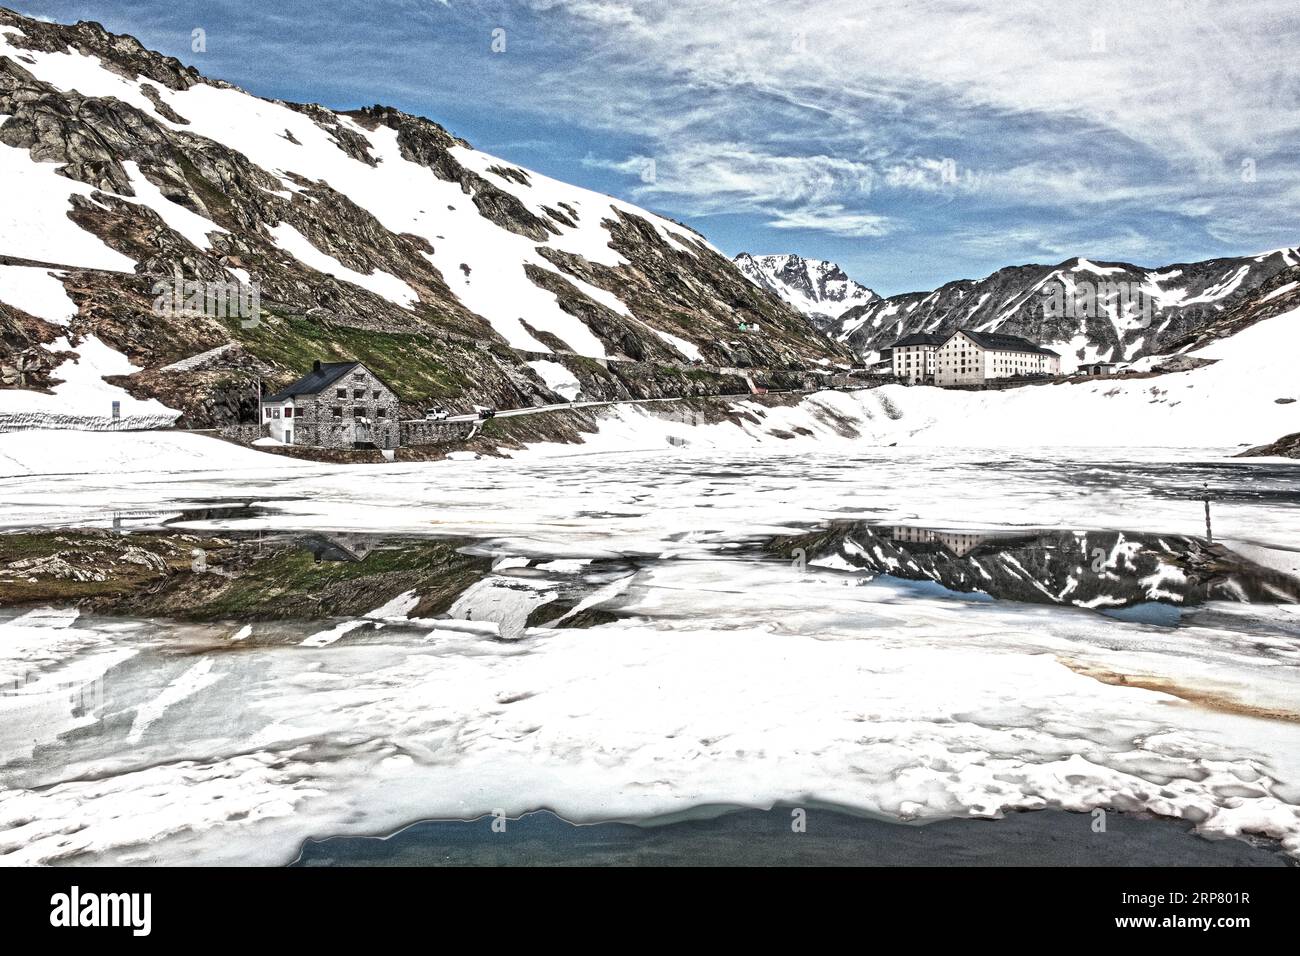 Foto mit reduzierter dynamischer Sättigung HDR des Bergpasses alpine Bergstraße alpine Straßenpass mit Schnee und Eis auf Bergsee See bei Stockfoto